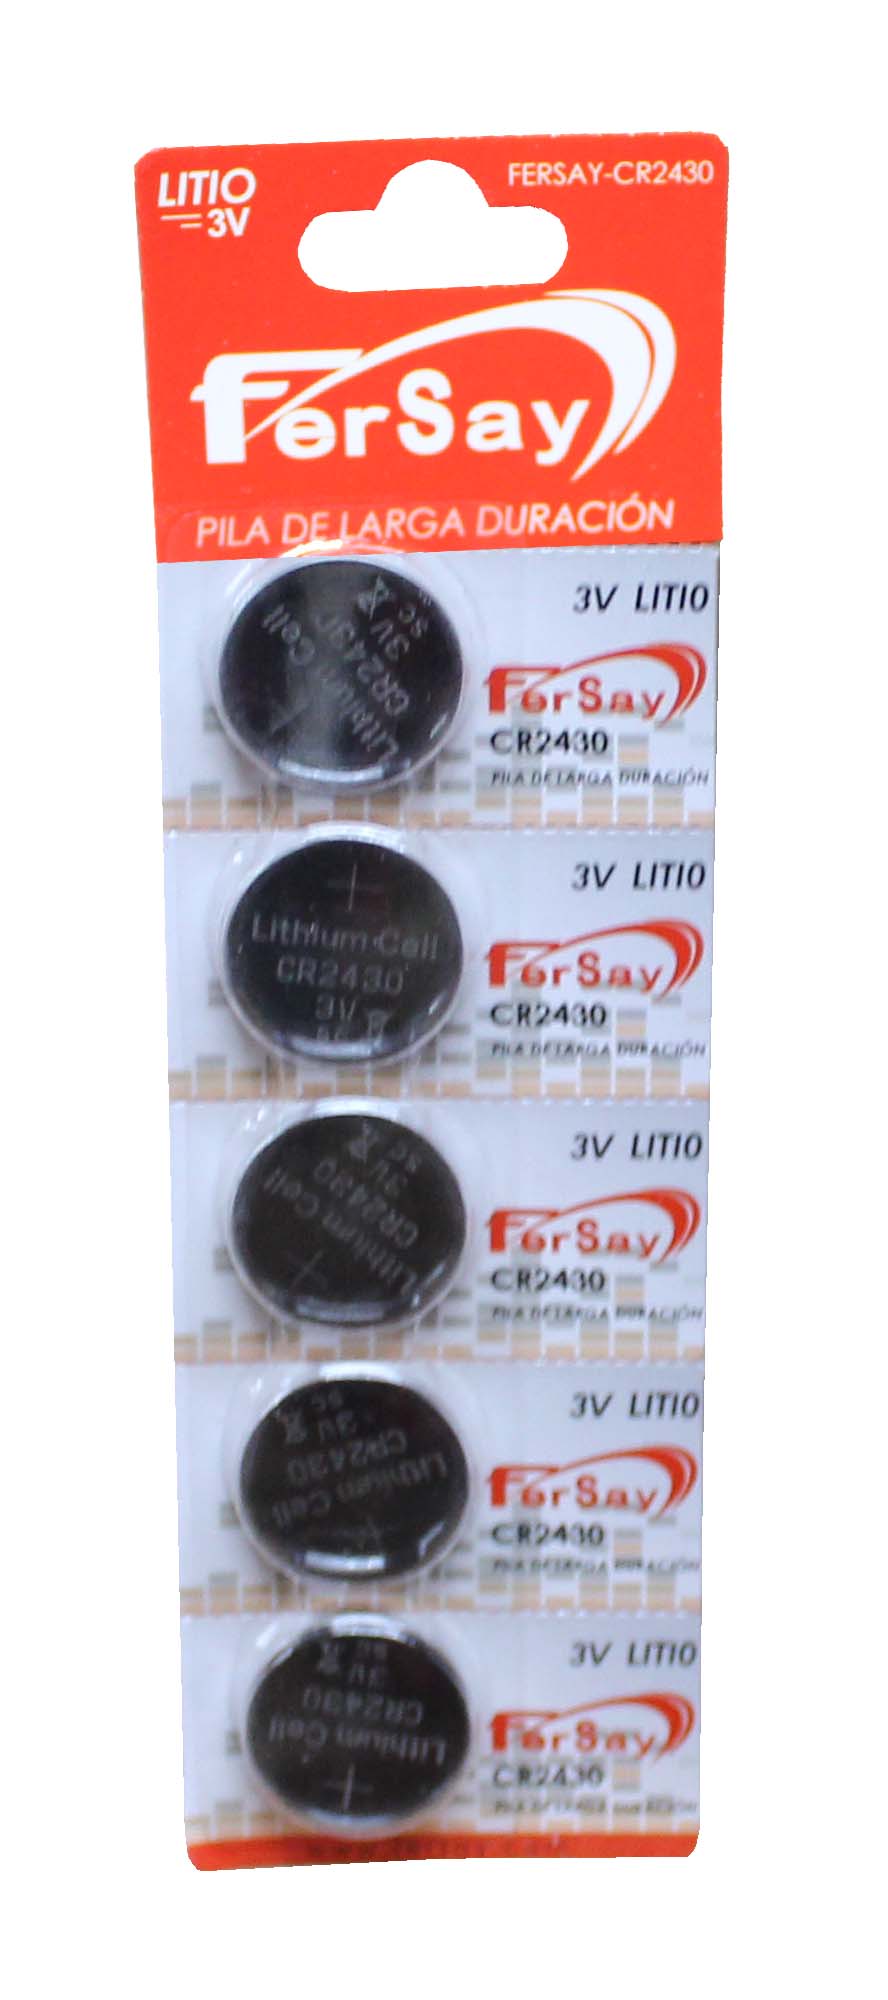 Pila botón de litio formato CR2430 Fersay, 5 unidades. - FERSAYCR2430 - FERSAY